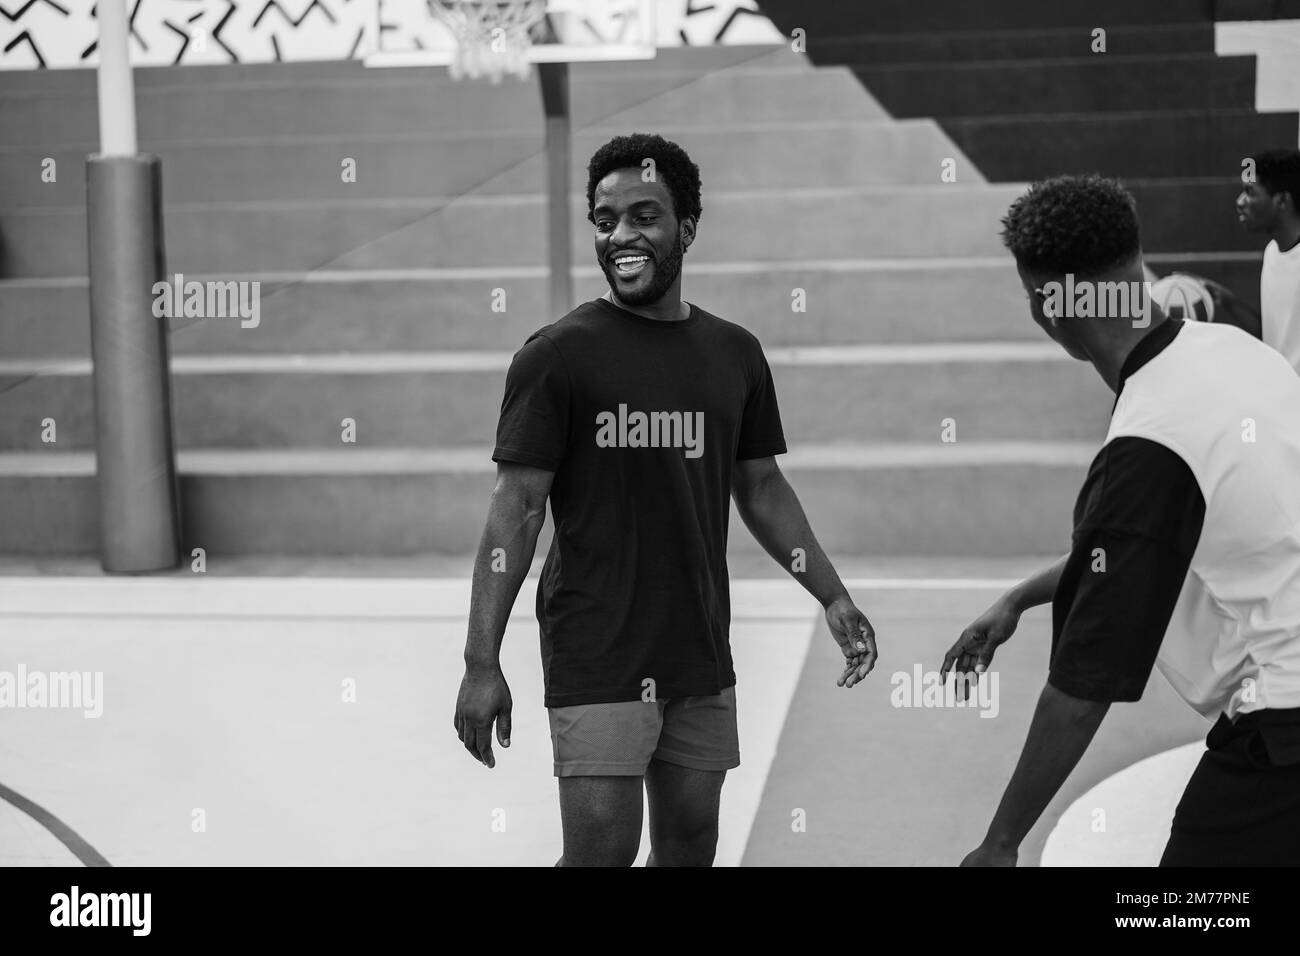 Amis africains jouant au basket-ball en extérieur - Focus sur. Centrer le visage de l'homme - montage en noir et blanc Banque D'Images